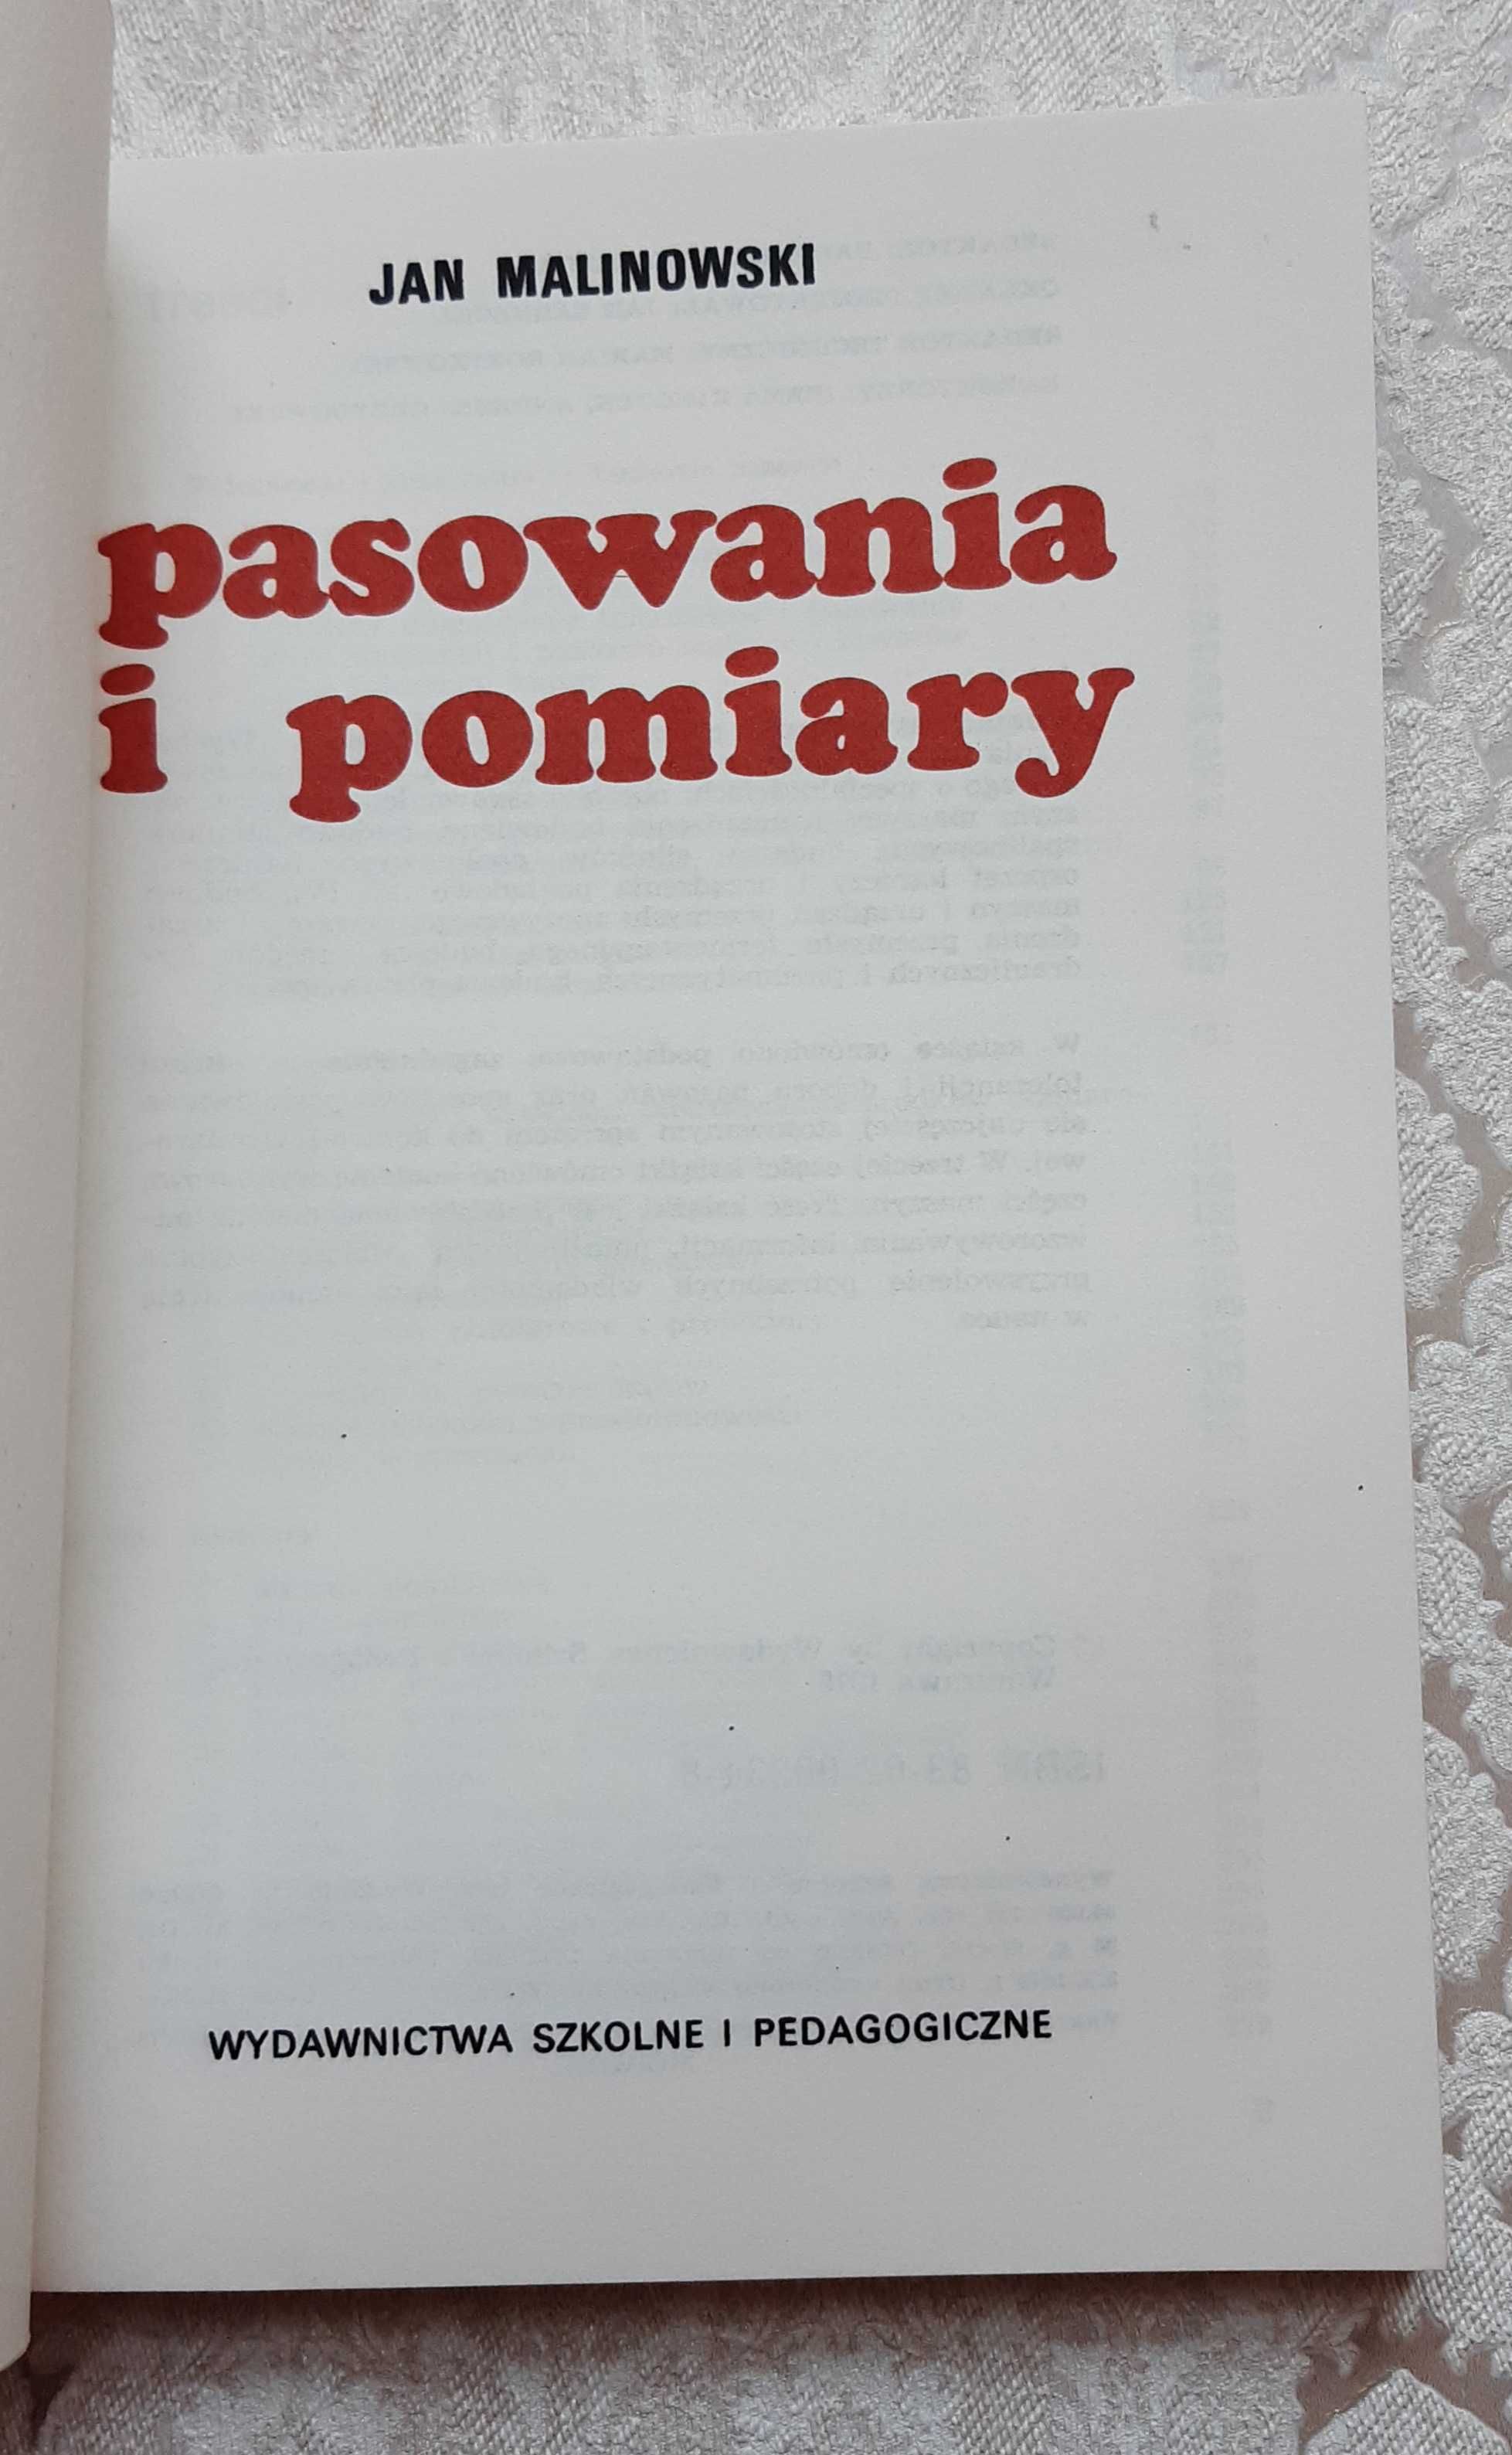 Książka "Pasowania i pomiary" Malinowski